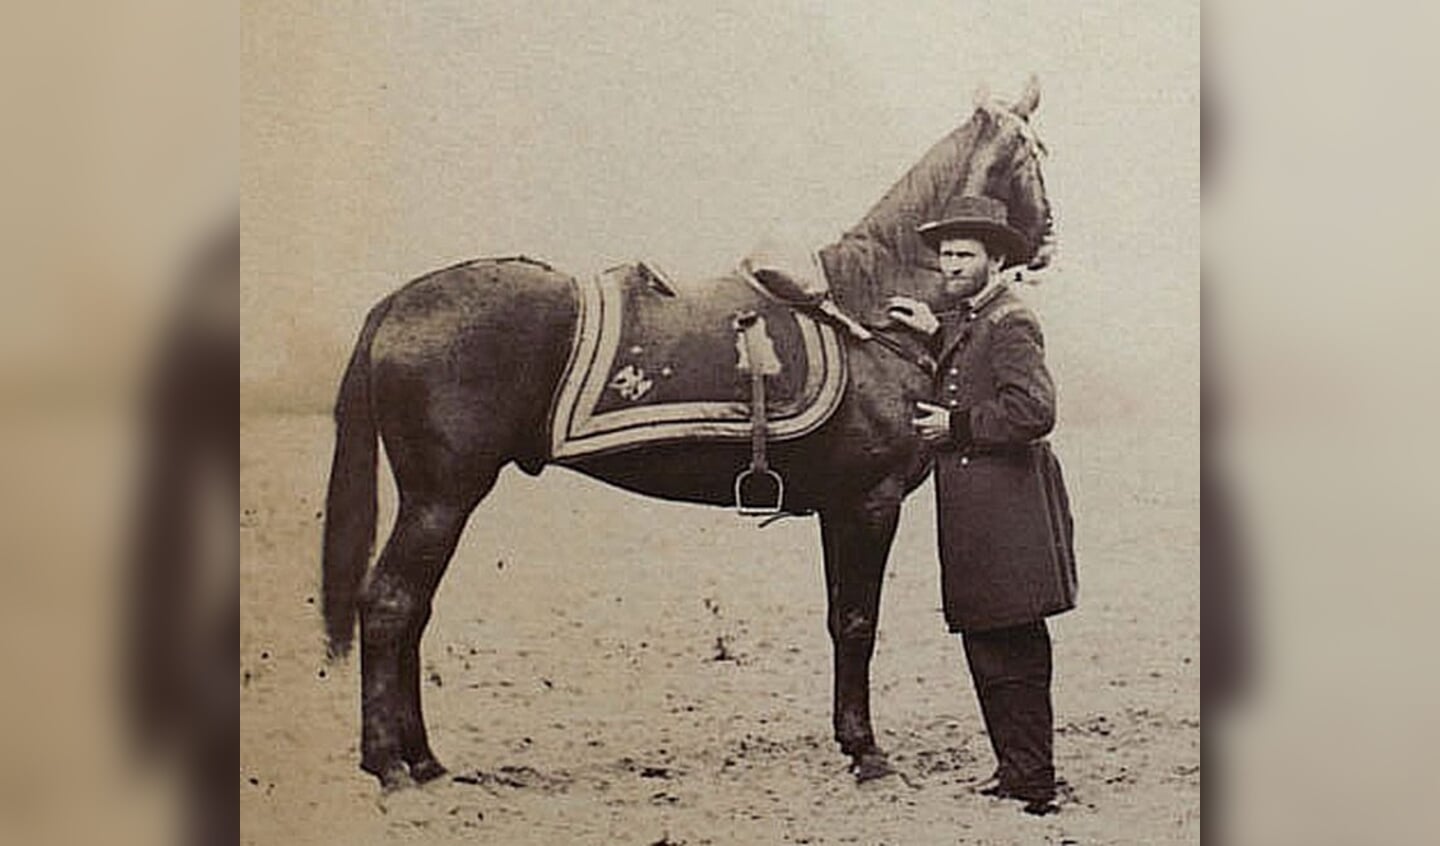 President Ulysses S. Grant met zijn meest geliefde en snelle paard Cincinnati